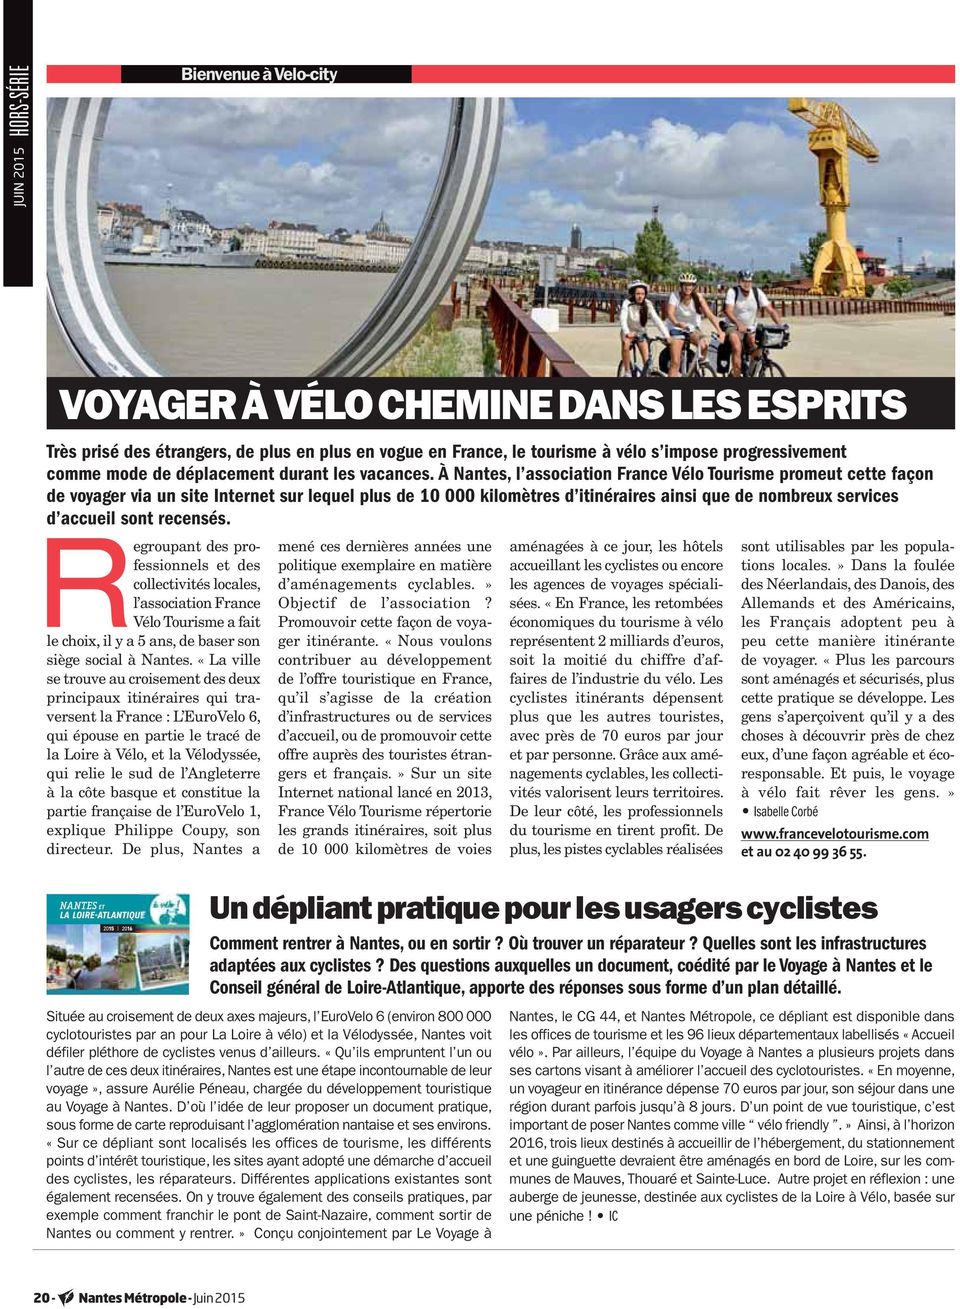 À Nantes, l association France Vélo Tourisme promeut cette façon de voyager via un site Internet sur lequel plus de 10 000 kilomètres d itinéraires ainsi que de nombreux services d accueil sont